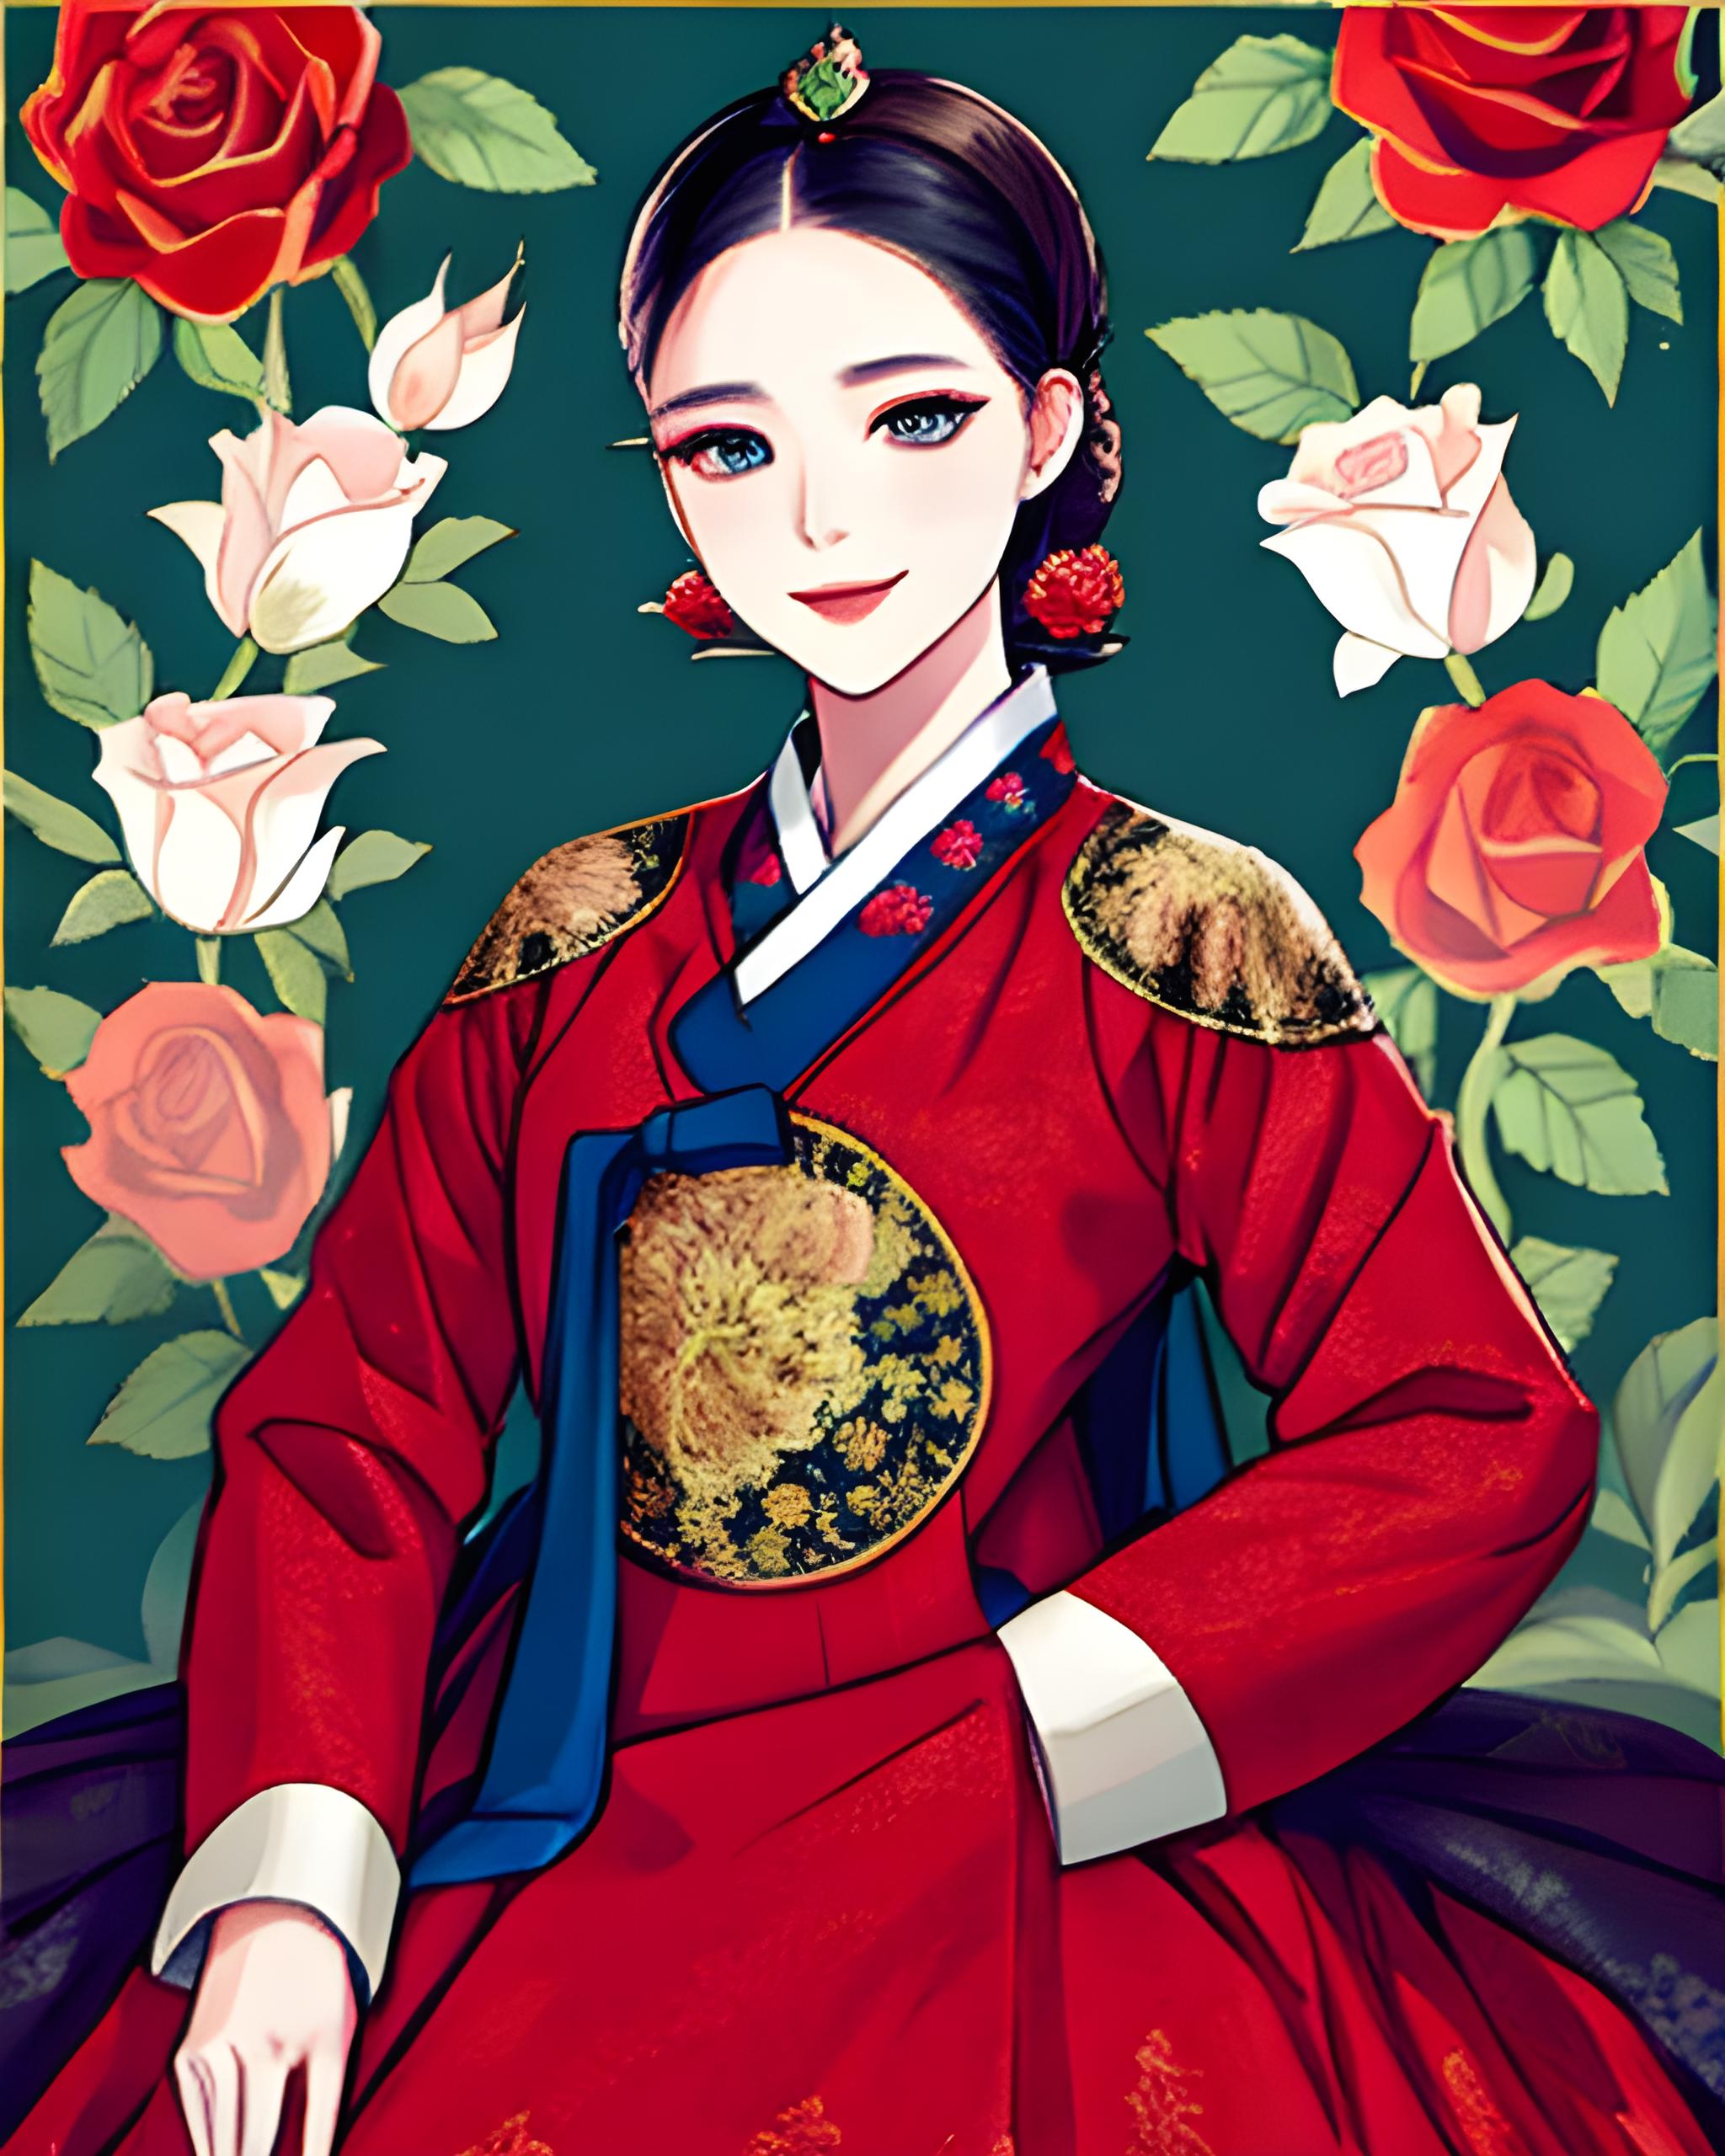 ArtStation - Girl in a cute Hanbok